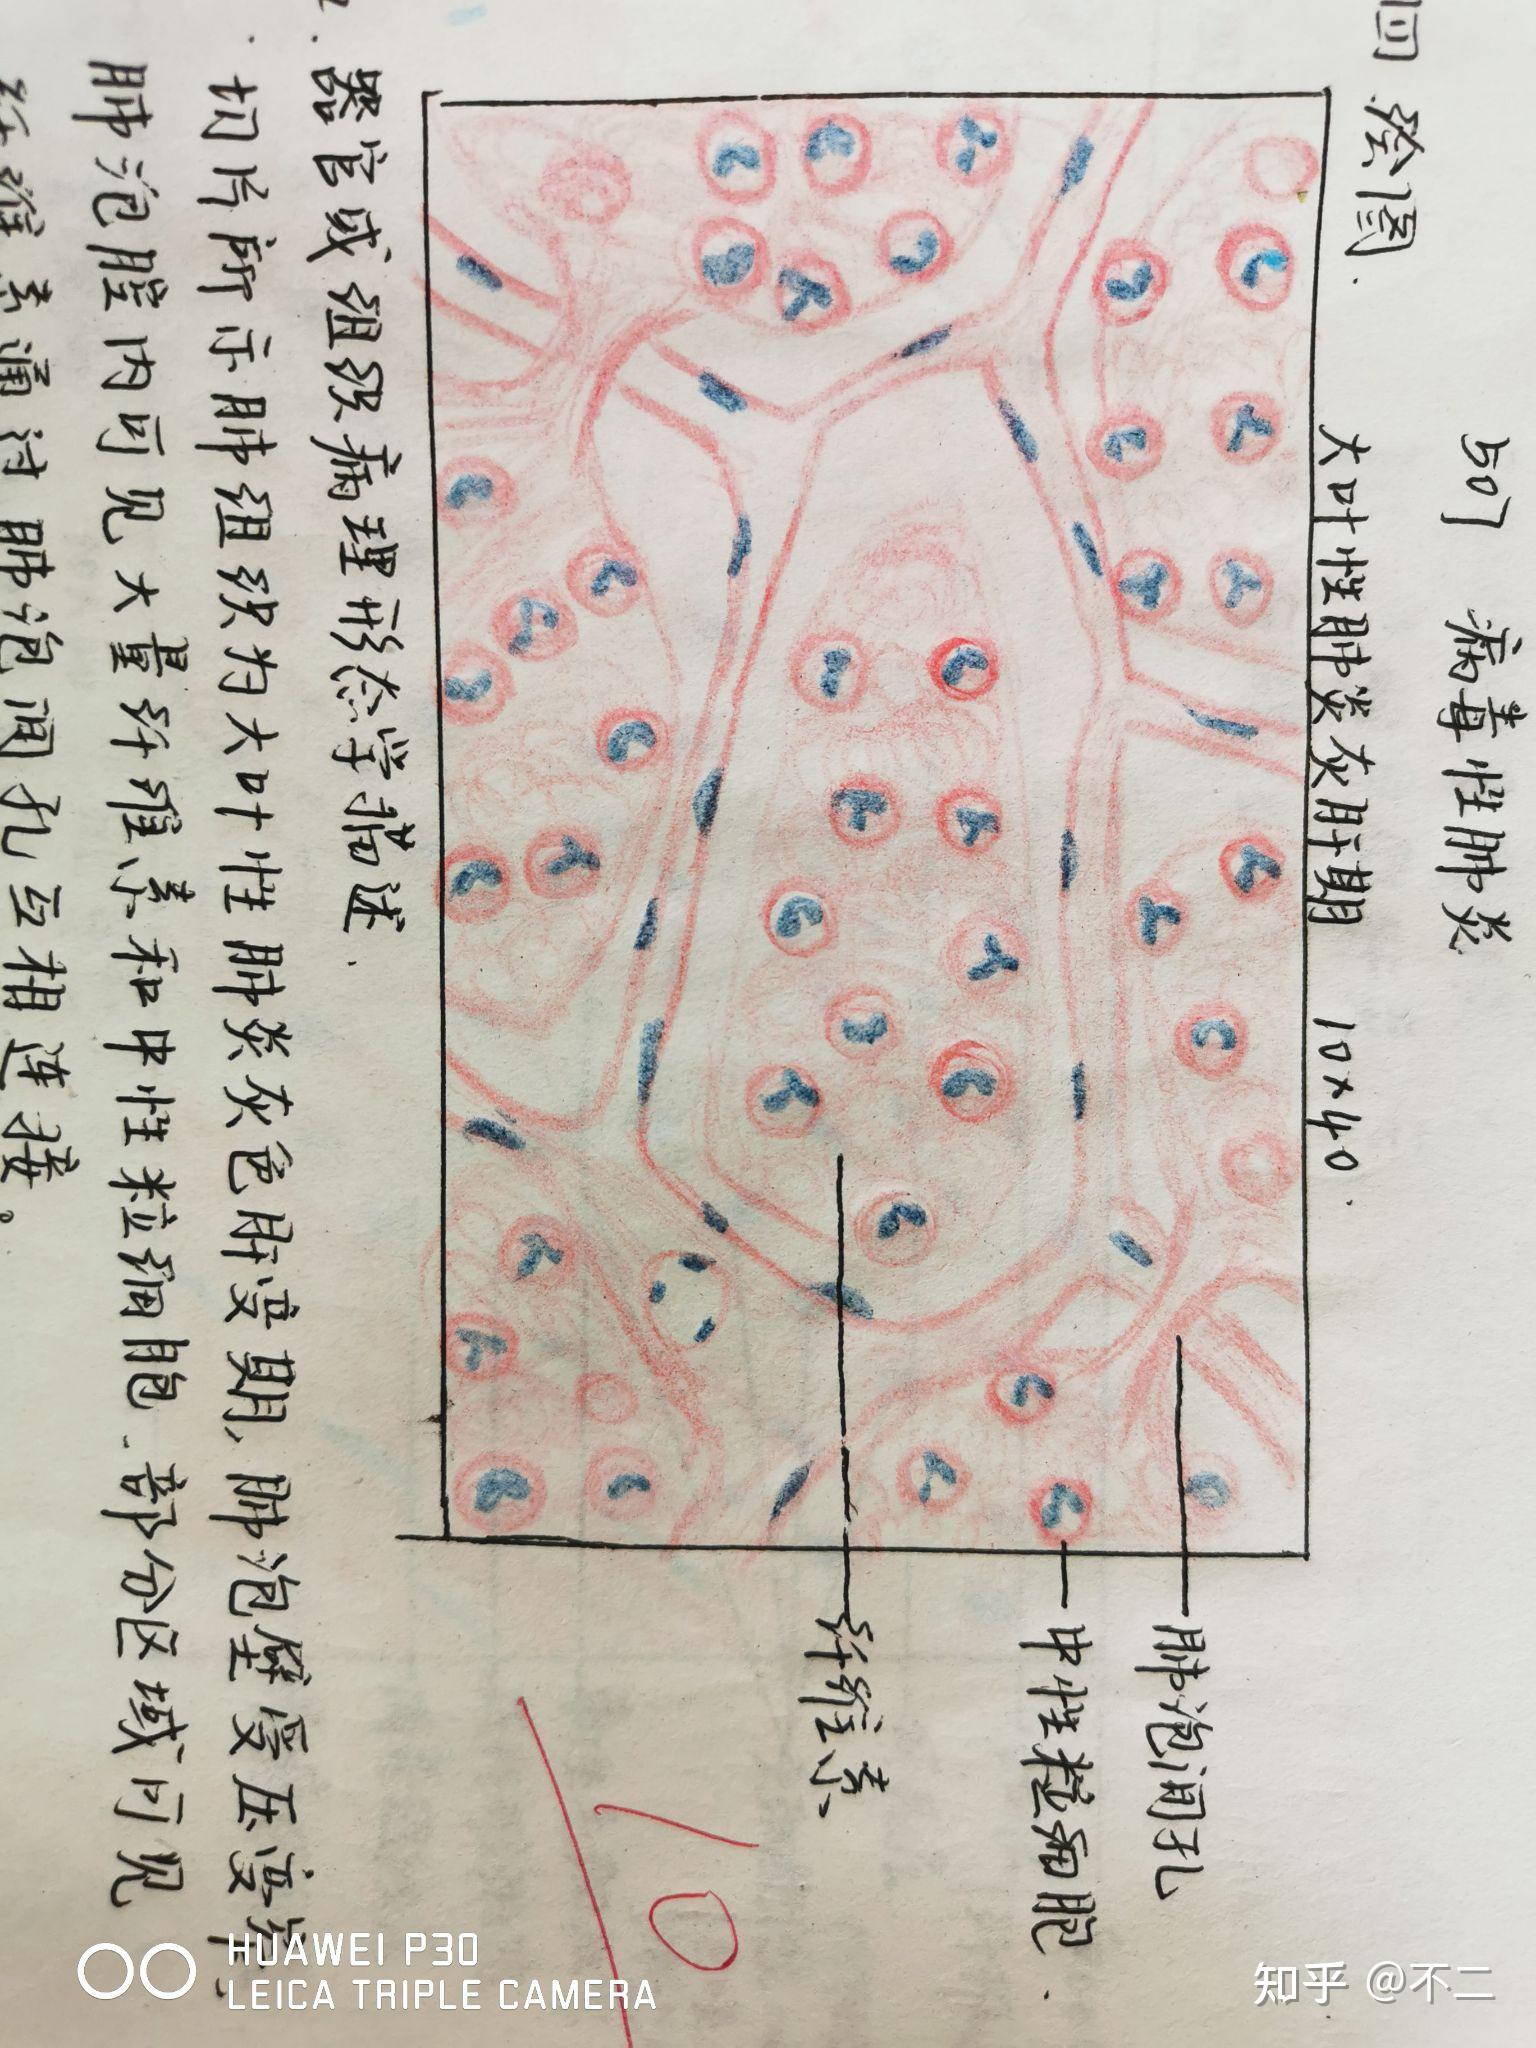 炎症细胞红蓝铅笔绘图图片